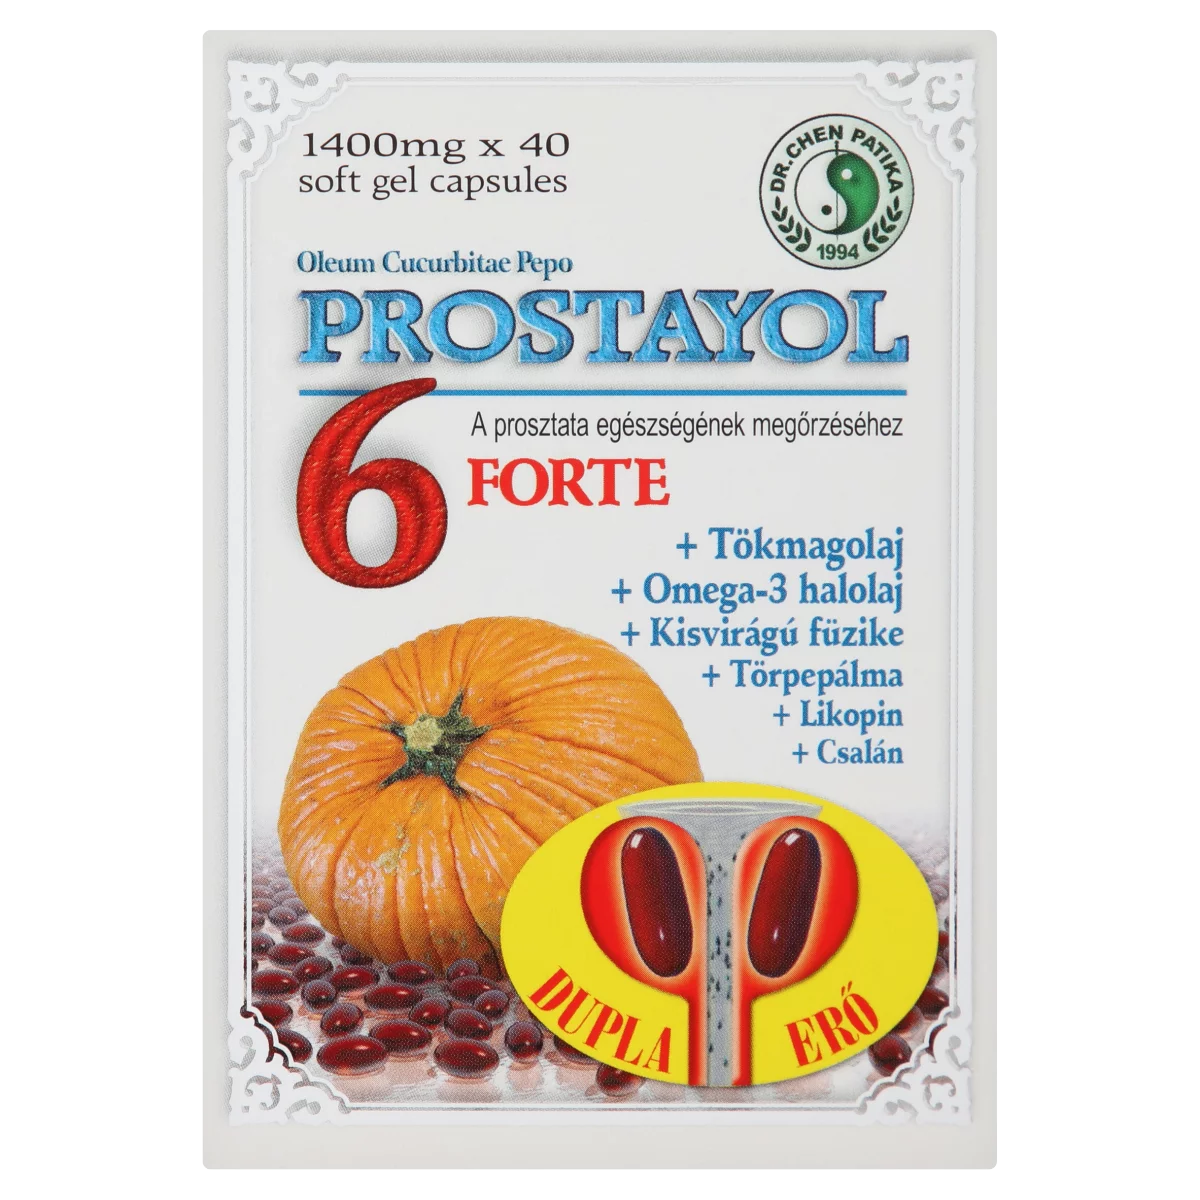 Dr. Chen Patika Prostayol 6 Forte étrend-kiegészítő kapszula 40 db 56 g